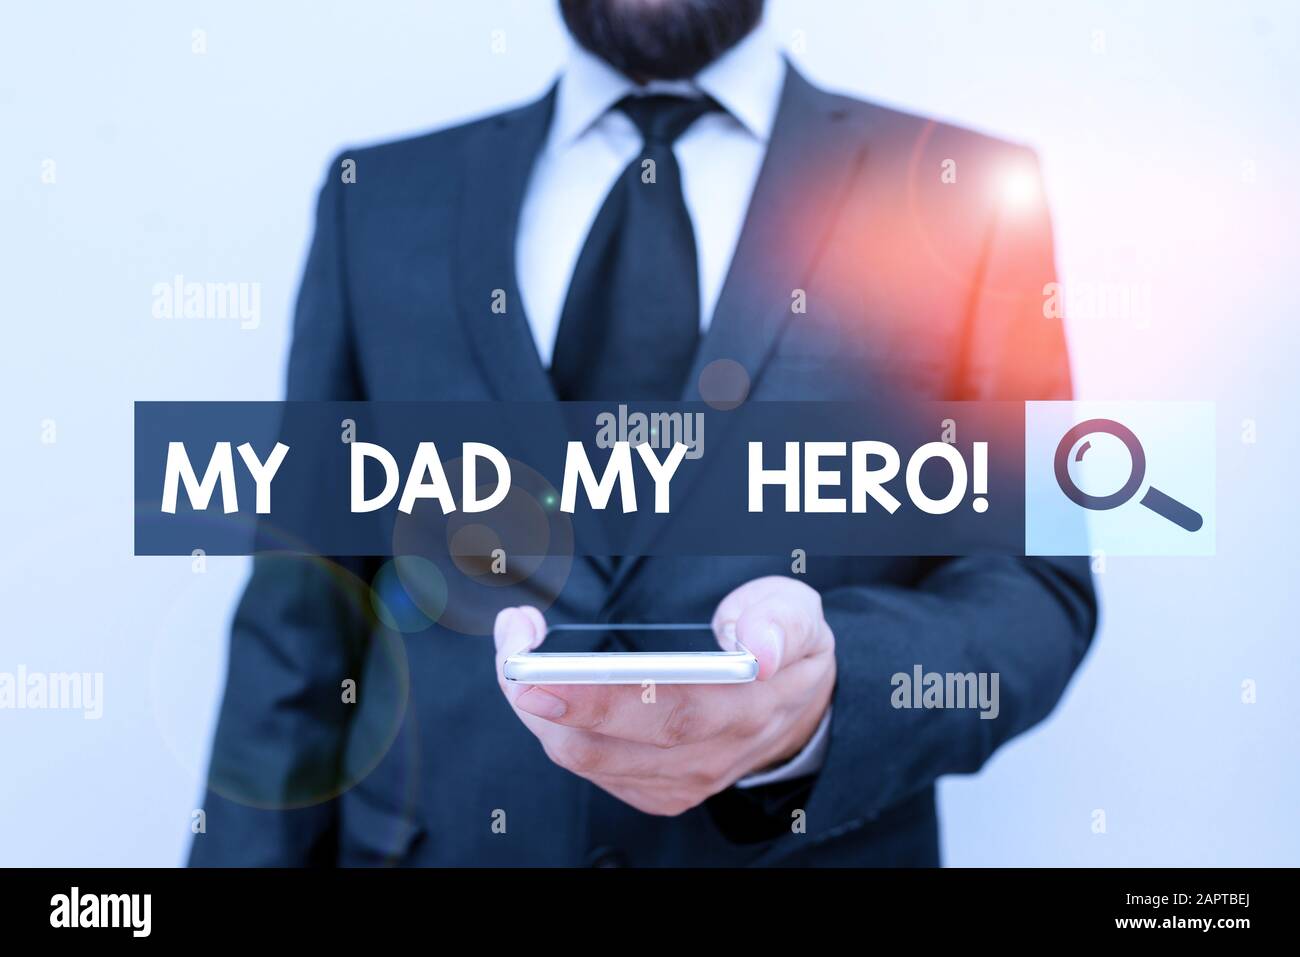 Hinweis zum "Mein Vater"-Helden wird geschrieben. Geschäftskonzept für Bewunderung für Ihren Vater Liebe Gefühle Gefühle Gefühle Kompliment Mann Mensch tragen formale Arbeit sui Stockfoto